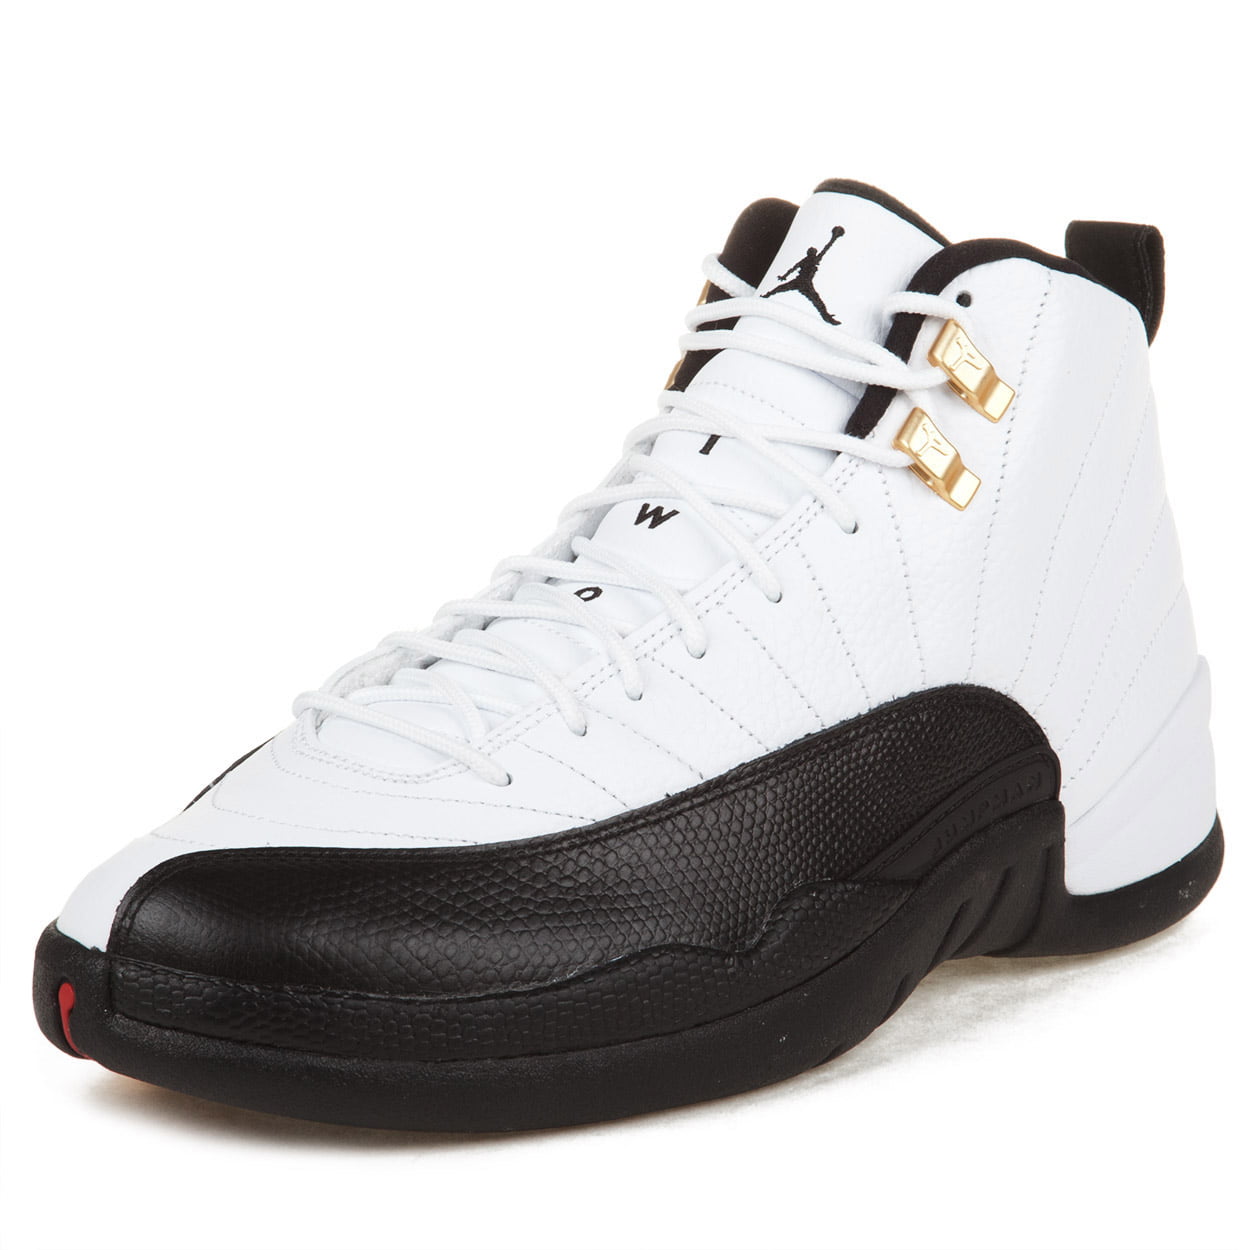 DS 1997 OG Nike Air Jordan 12 Taxi 130690-101 Vintage White/Black Size 12